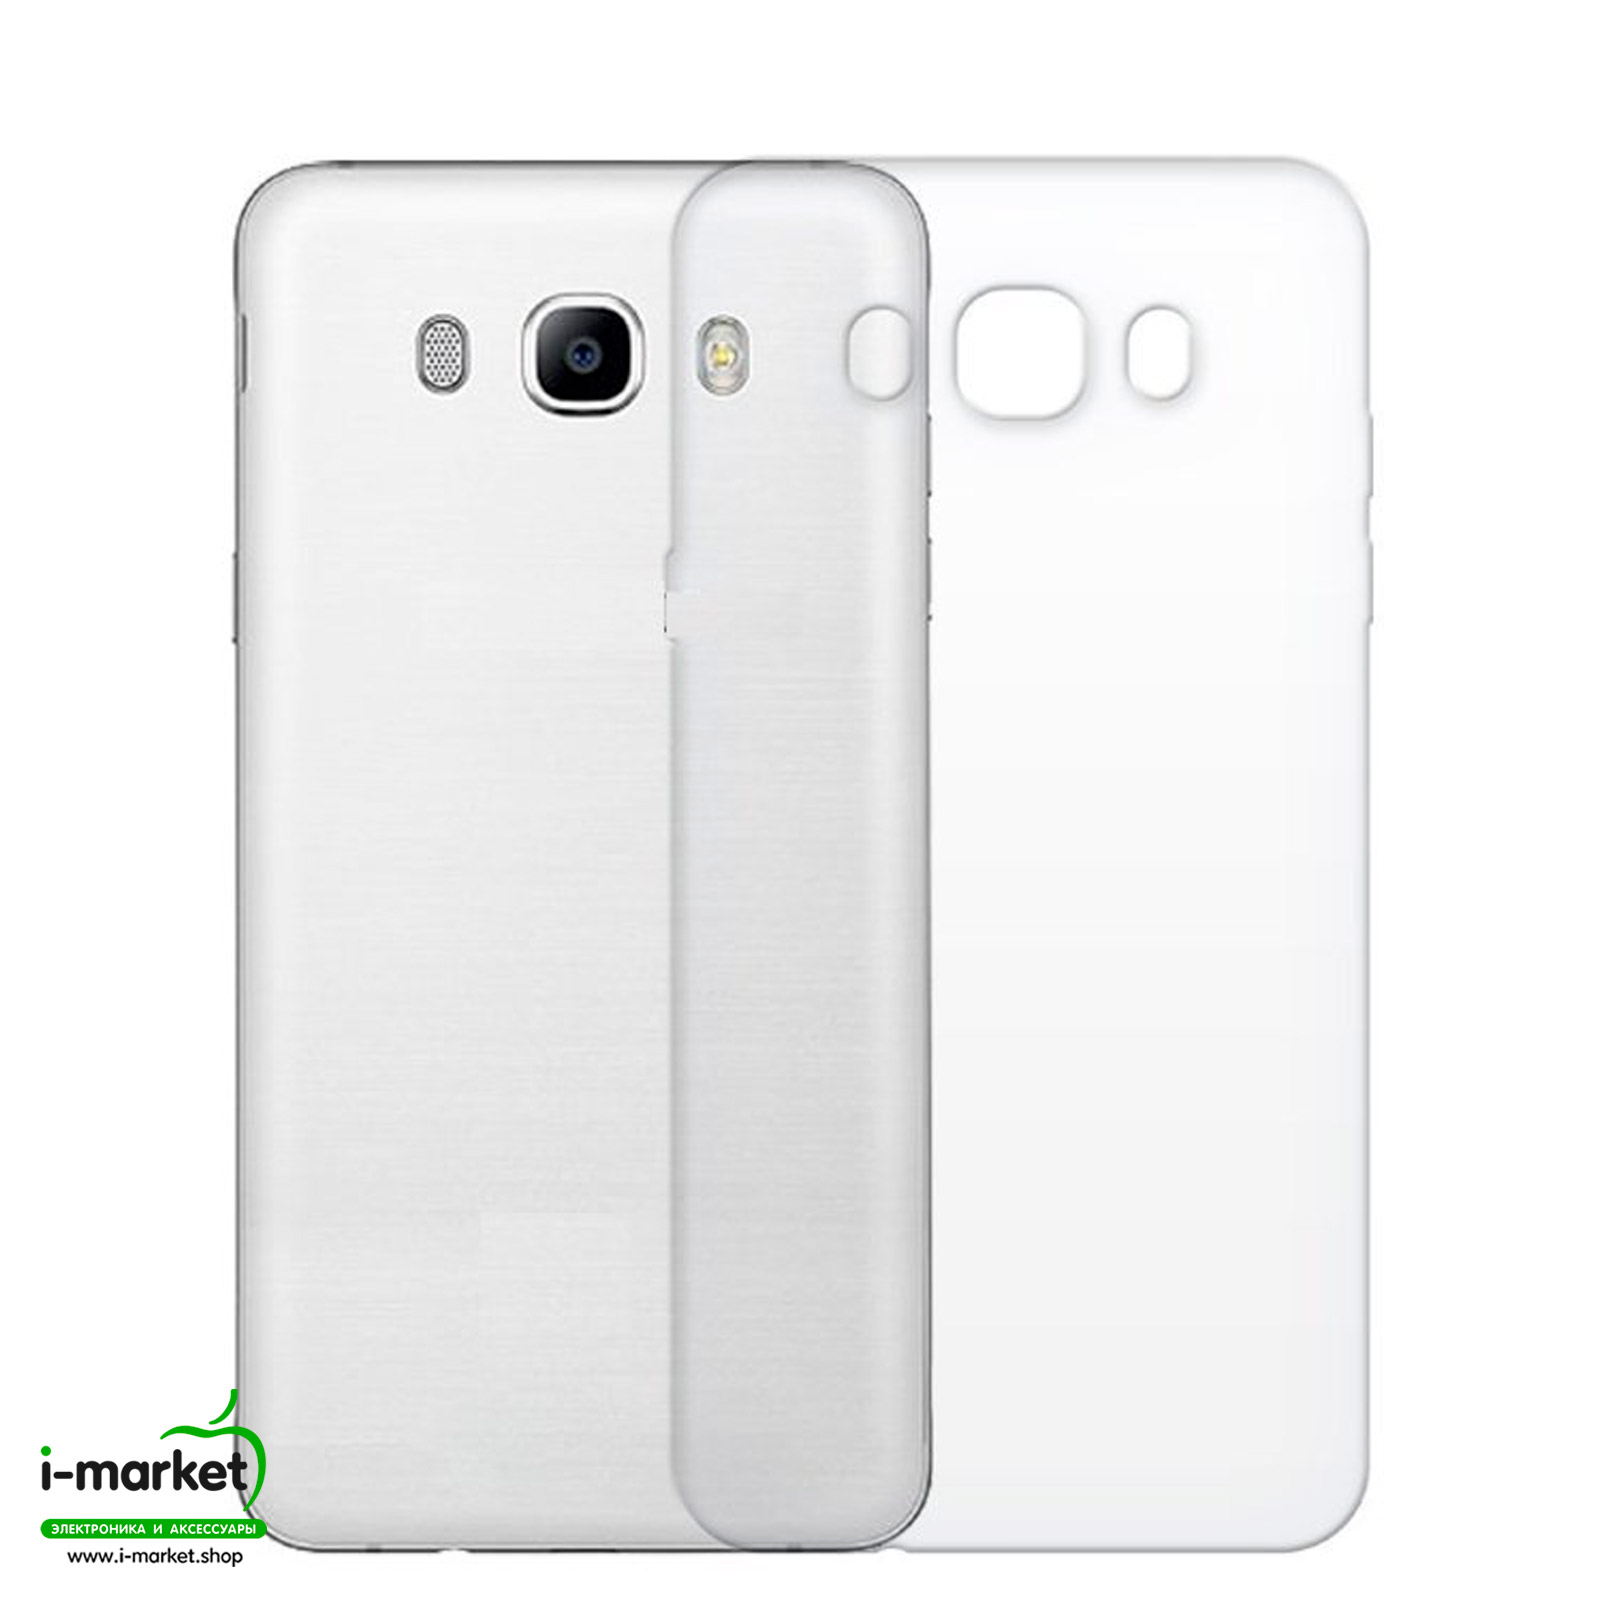 Чехол накладка для SAMSUNG Galaxy J5 2016 (SM-J510), силикон, цвет прозрачный